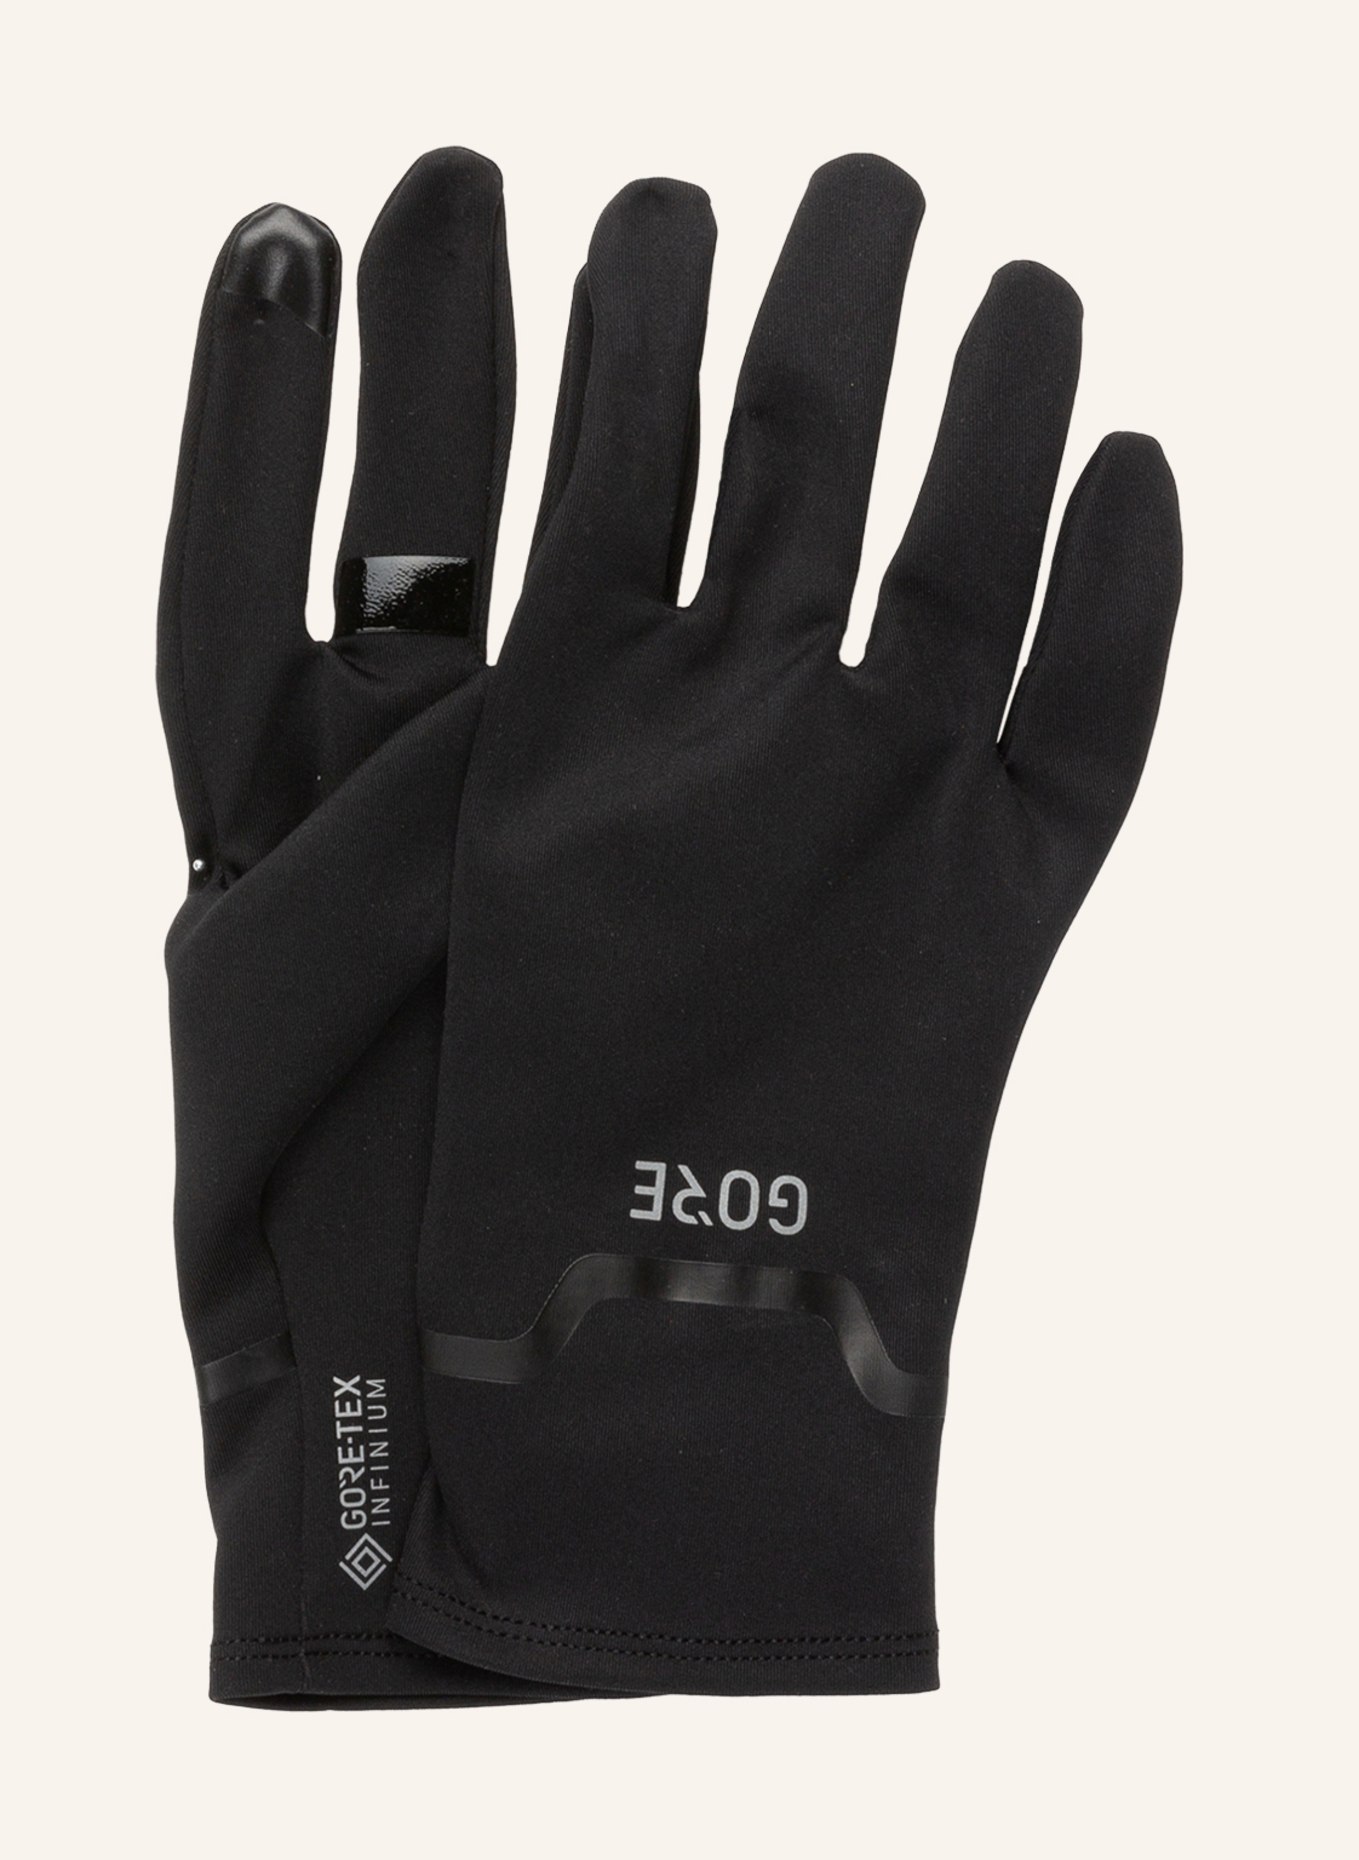 GORE RUNNING WEAR Multisport-Handschuhe GORE-TEX INFINIUM™, Farbe: SCHWARZ (Bild 1)